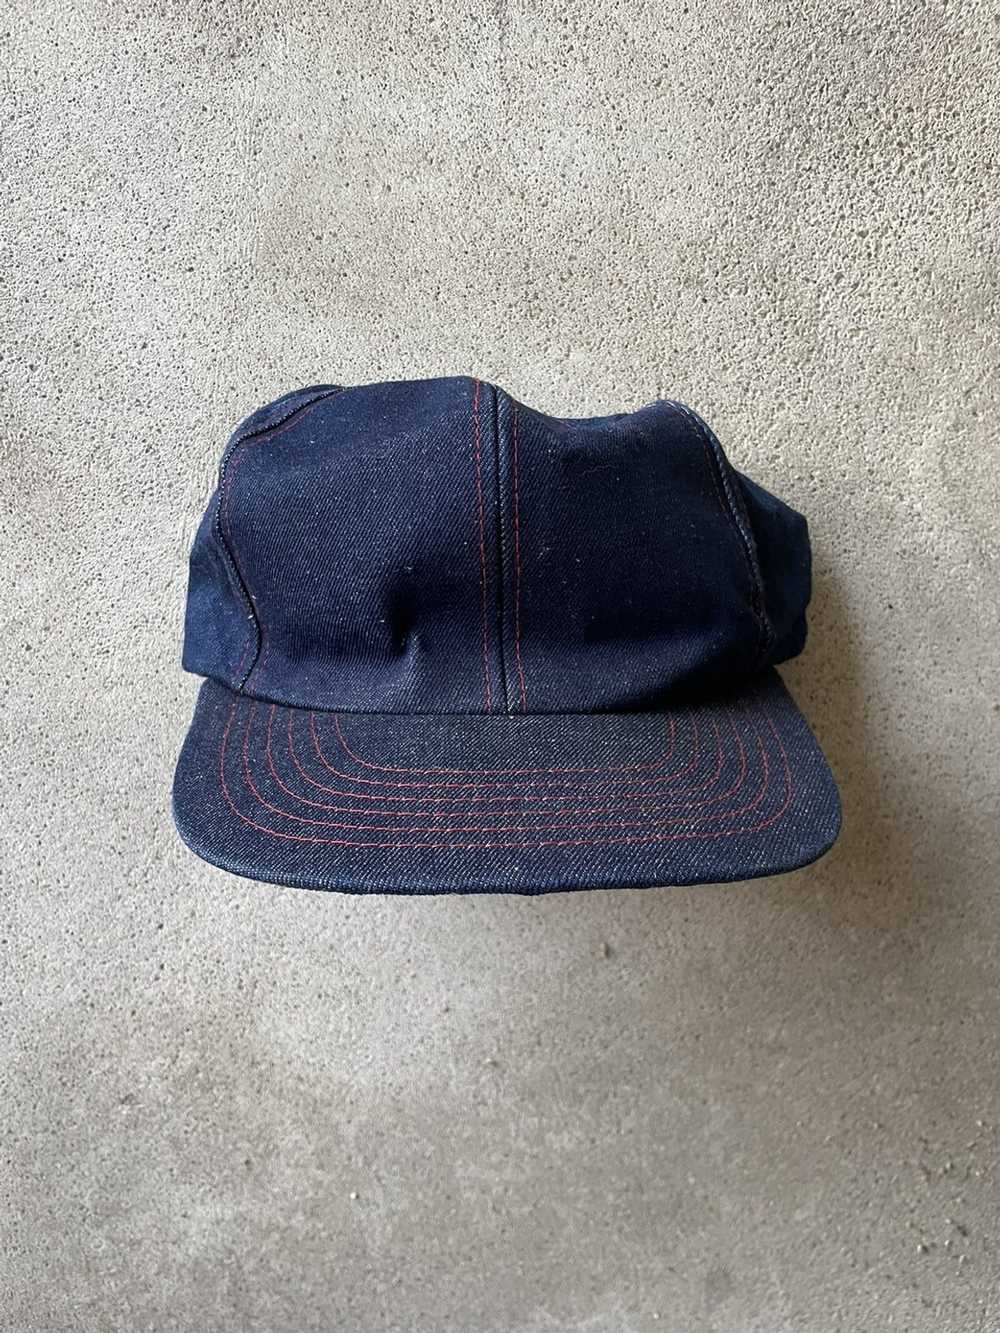 Vintage Vintage denim contrast stitch hat - image 2